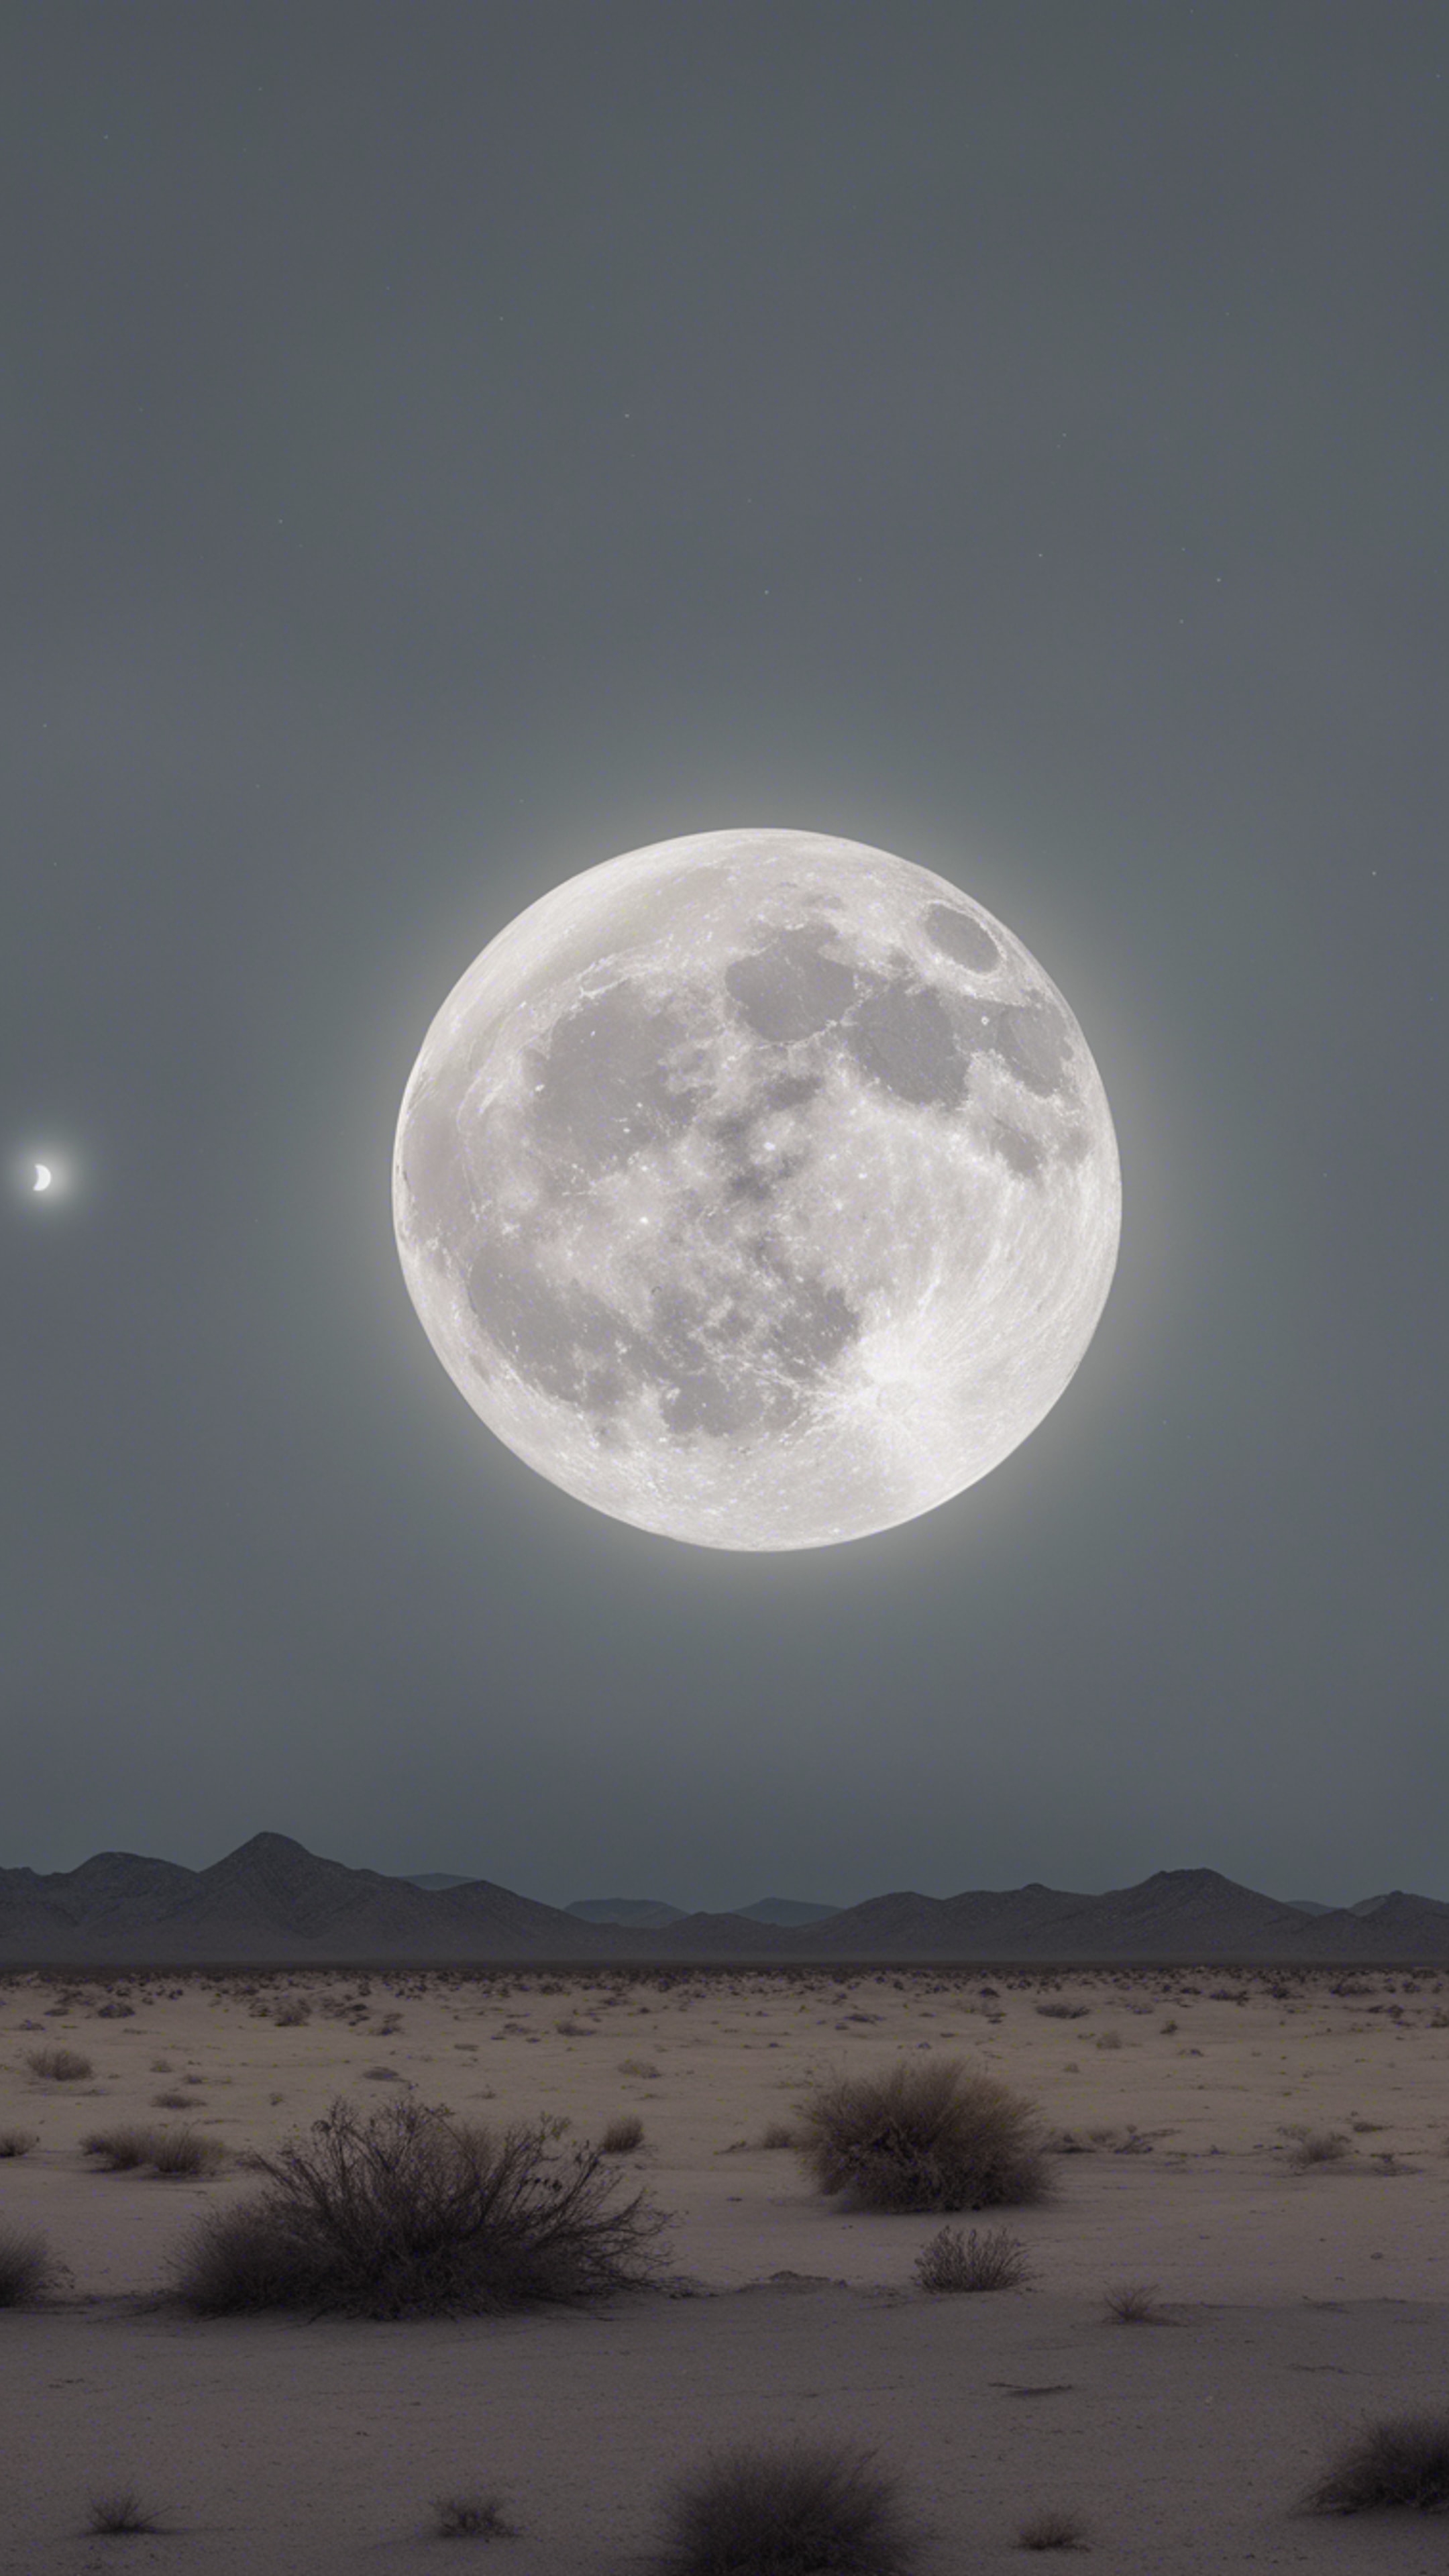 An eerie full moon casting a light gray hue over a desolate desert landscape. Hintergrund[b219b4d700dc4cdd8b88]